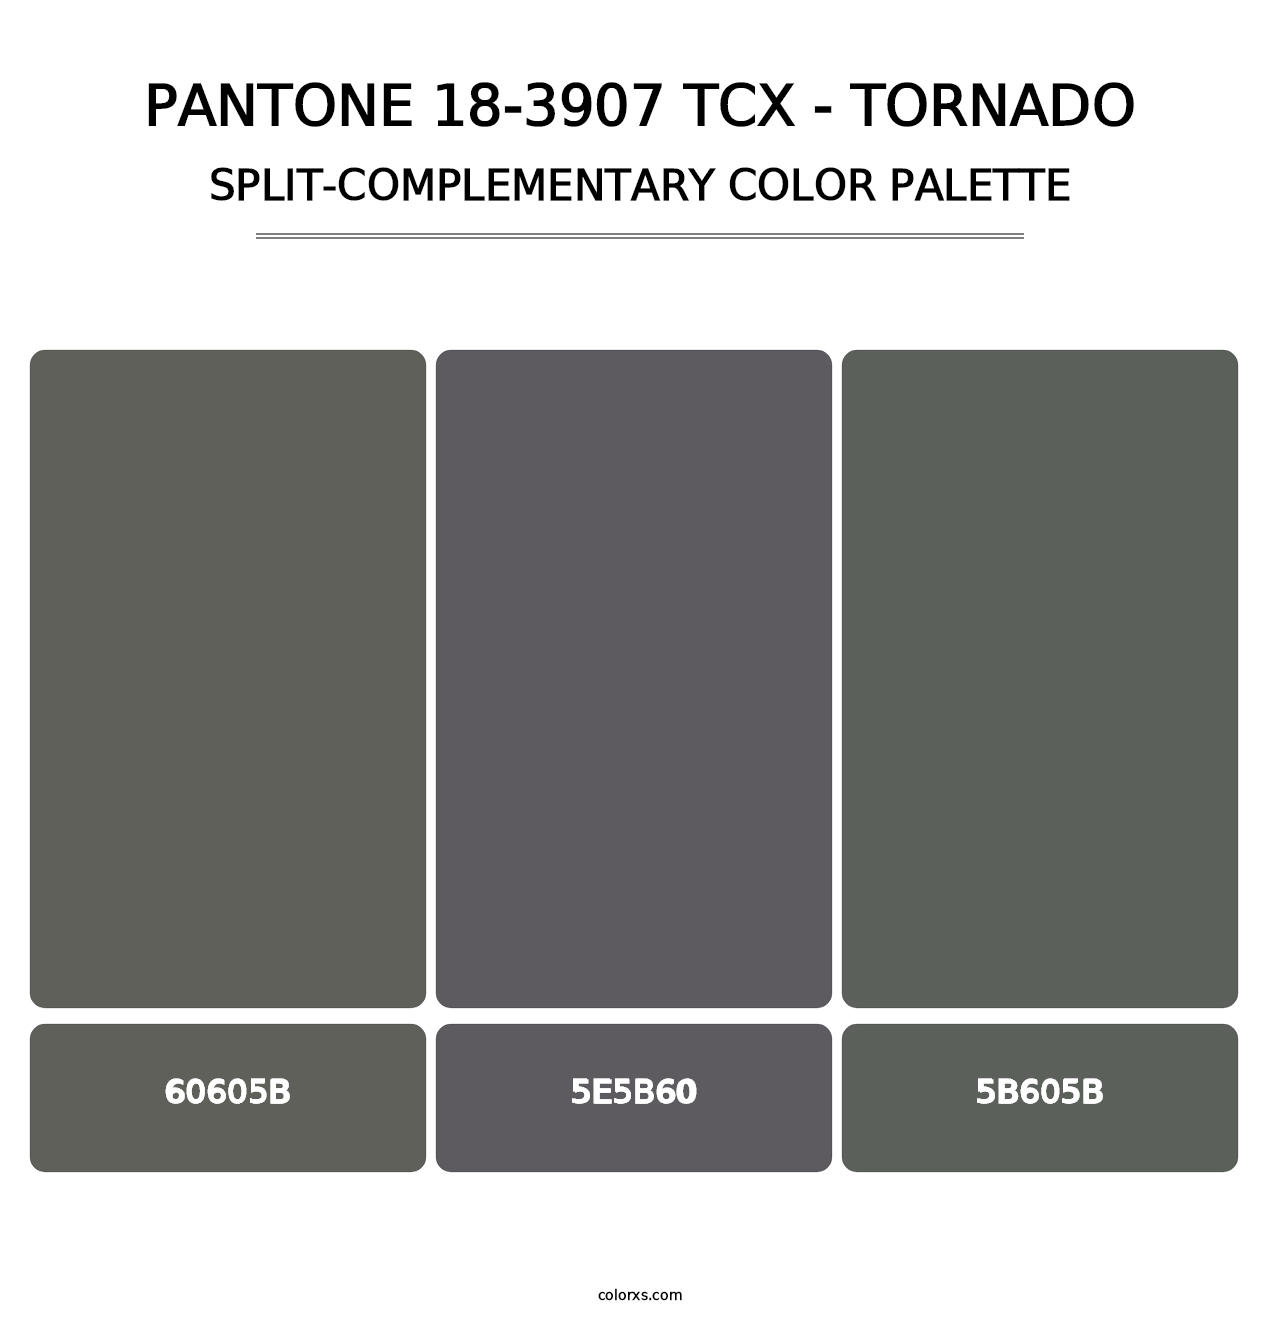 PANTONE 18-3907 TCX - Tornado - Split-Complementary Color Palette